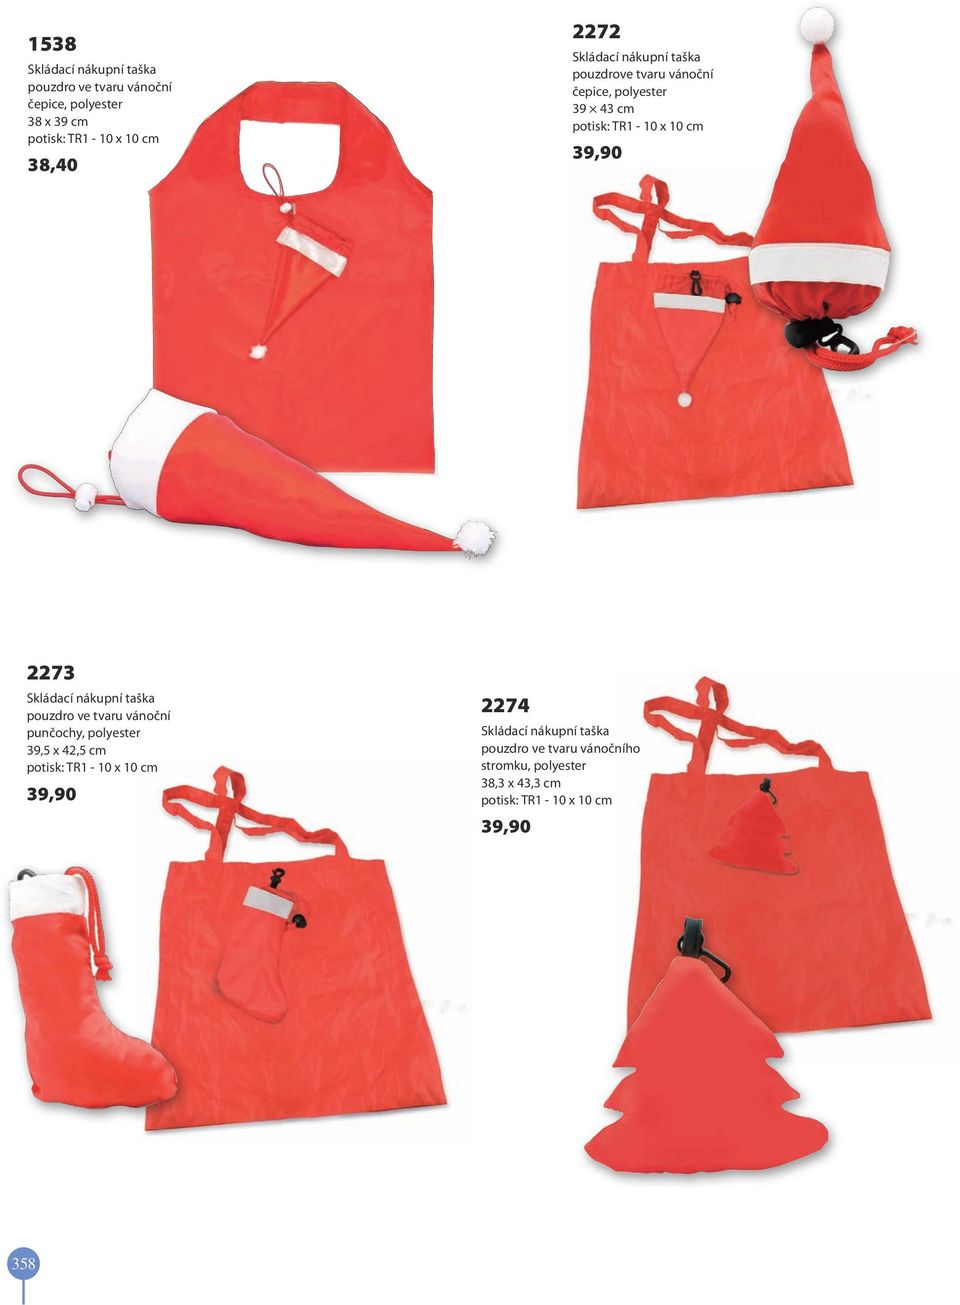 Skládací nákupní taška pouzdro ve tvaru vánoční punčochy, polyester 39,5 x 42,5 cm potisk: TR1-10 x 10 cm 39,90